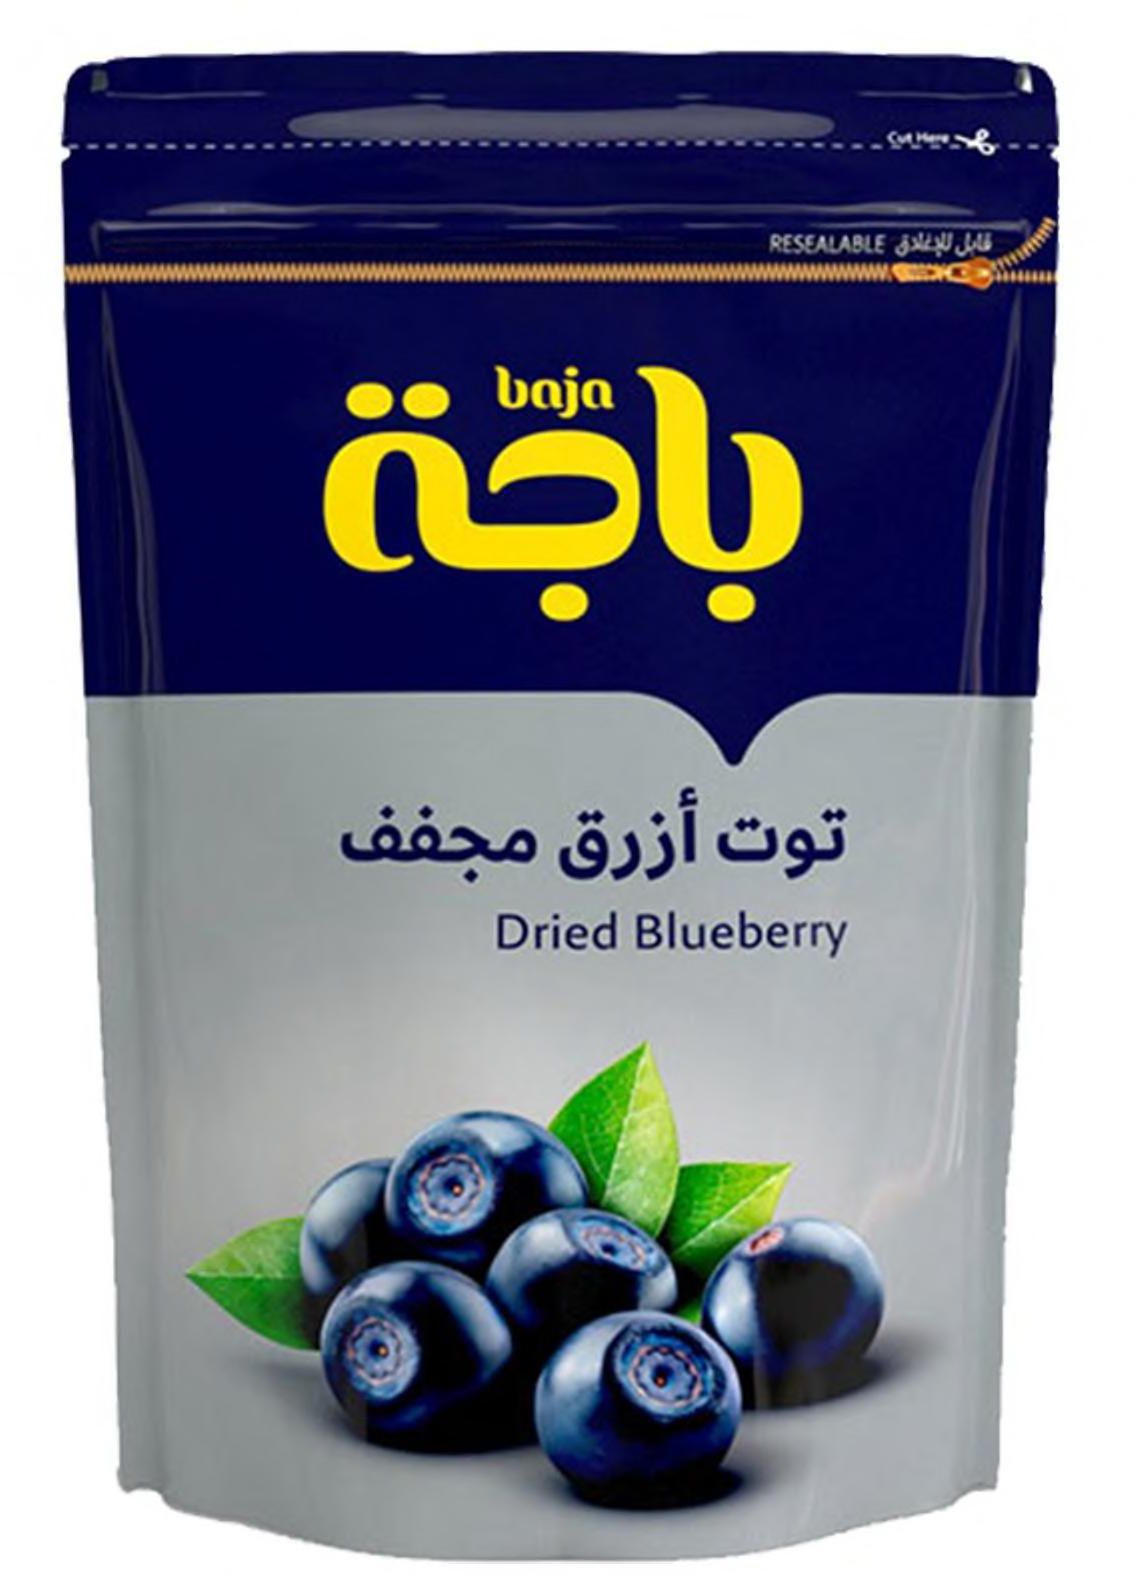 Baja dried blueberry 200 g